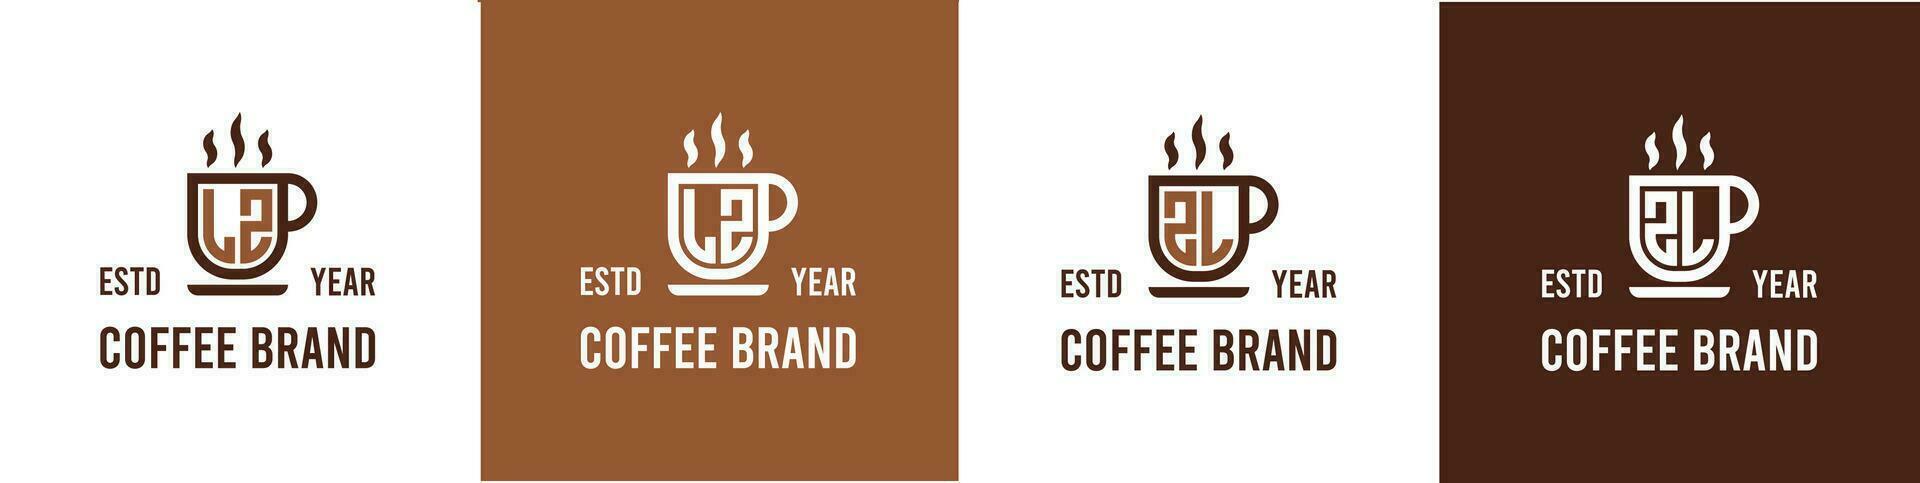 brev lz och zl kaffe logotyp, lämplig för några företag relaterad till kaffe, te, eller Övrig med lz eller zl initialer. vektor